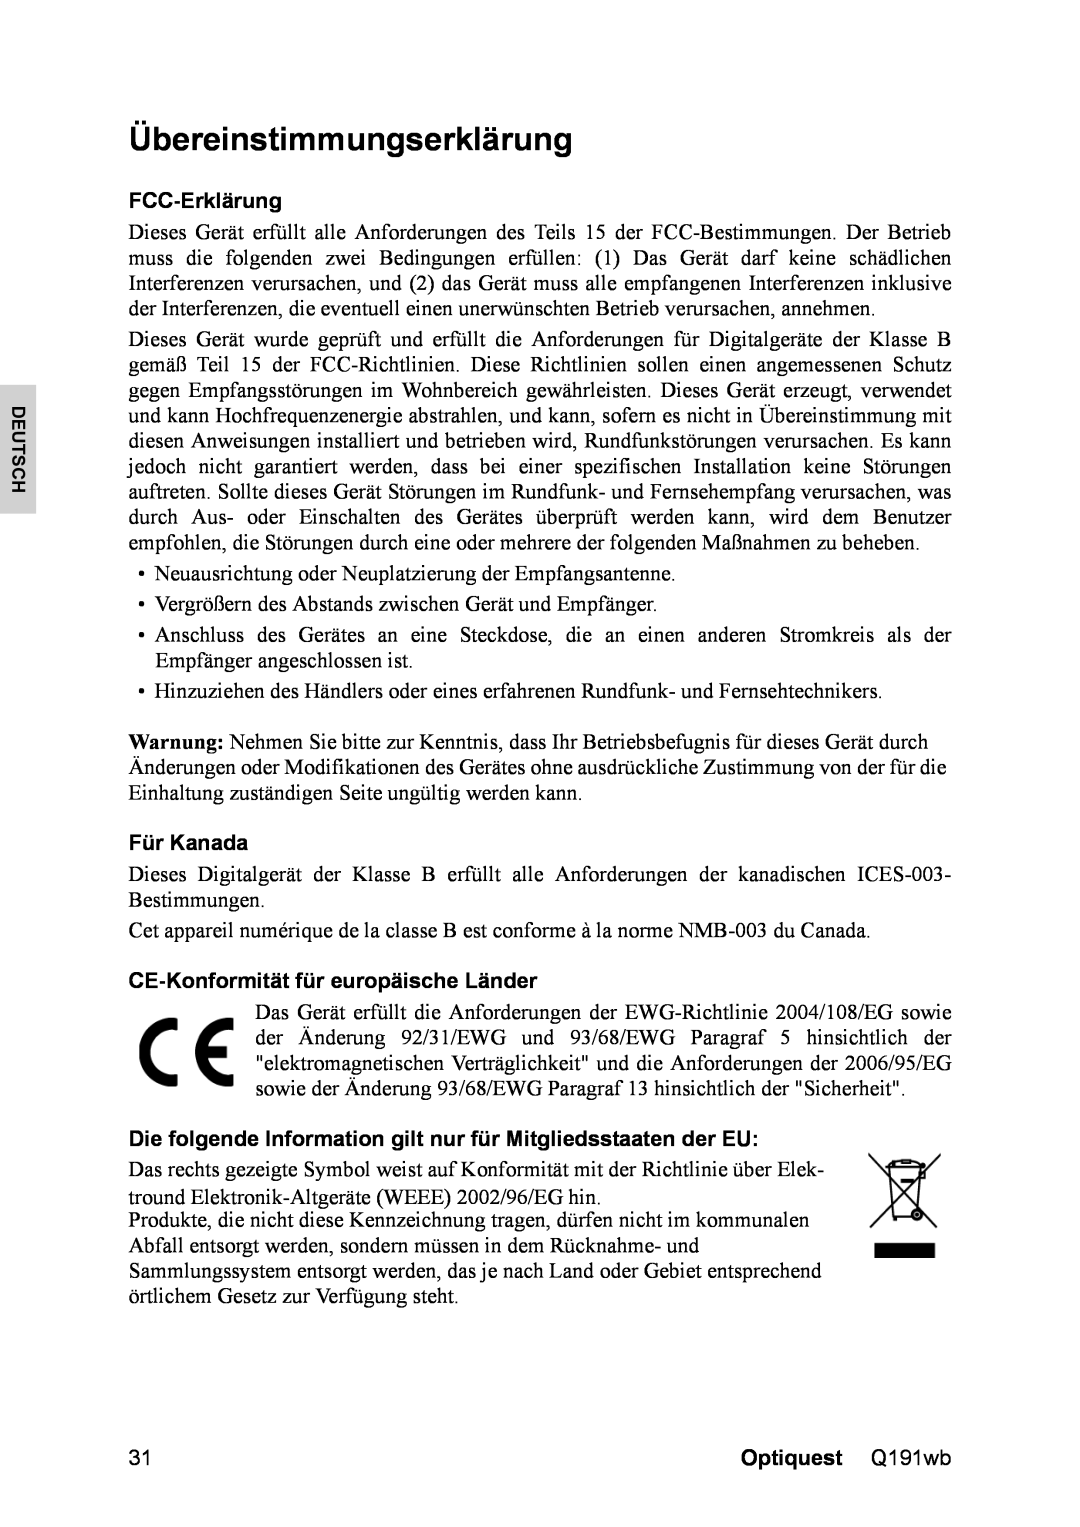 ViewSonic Q191WB, VS12105 manual Übereinstimmungserklärung, FCC-Erklärung, Für Kanada, CE-Konformitätfür europäische Länder 